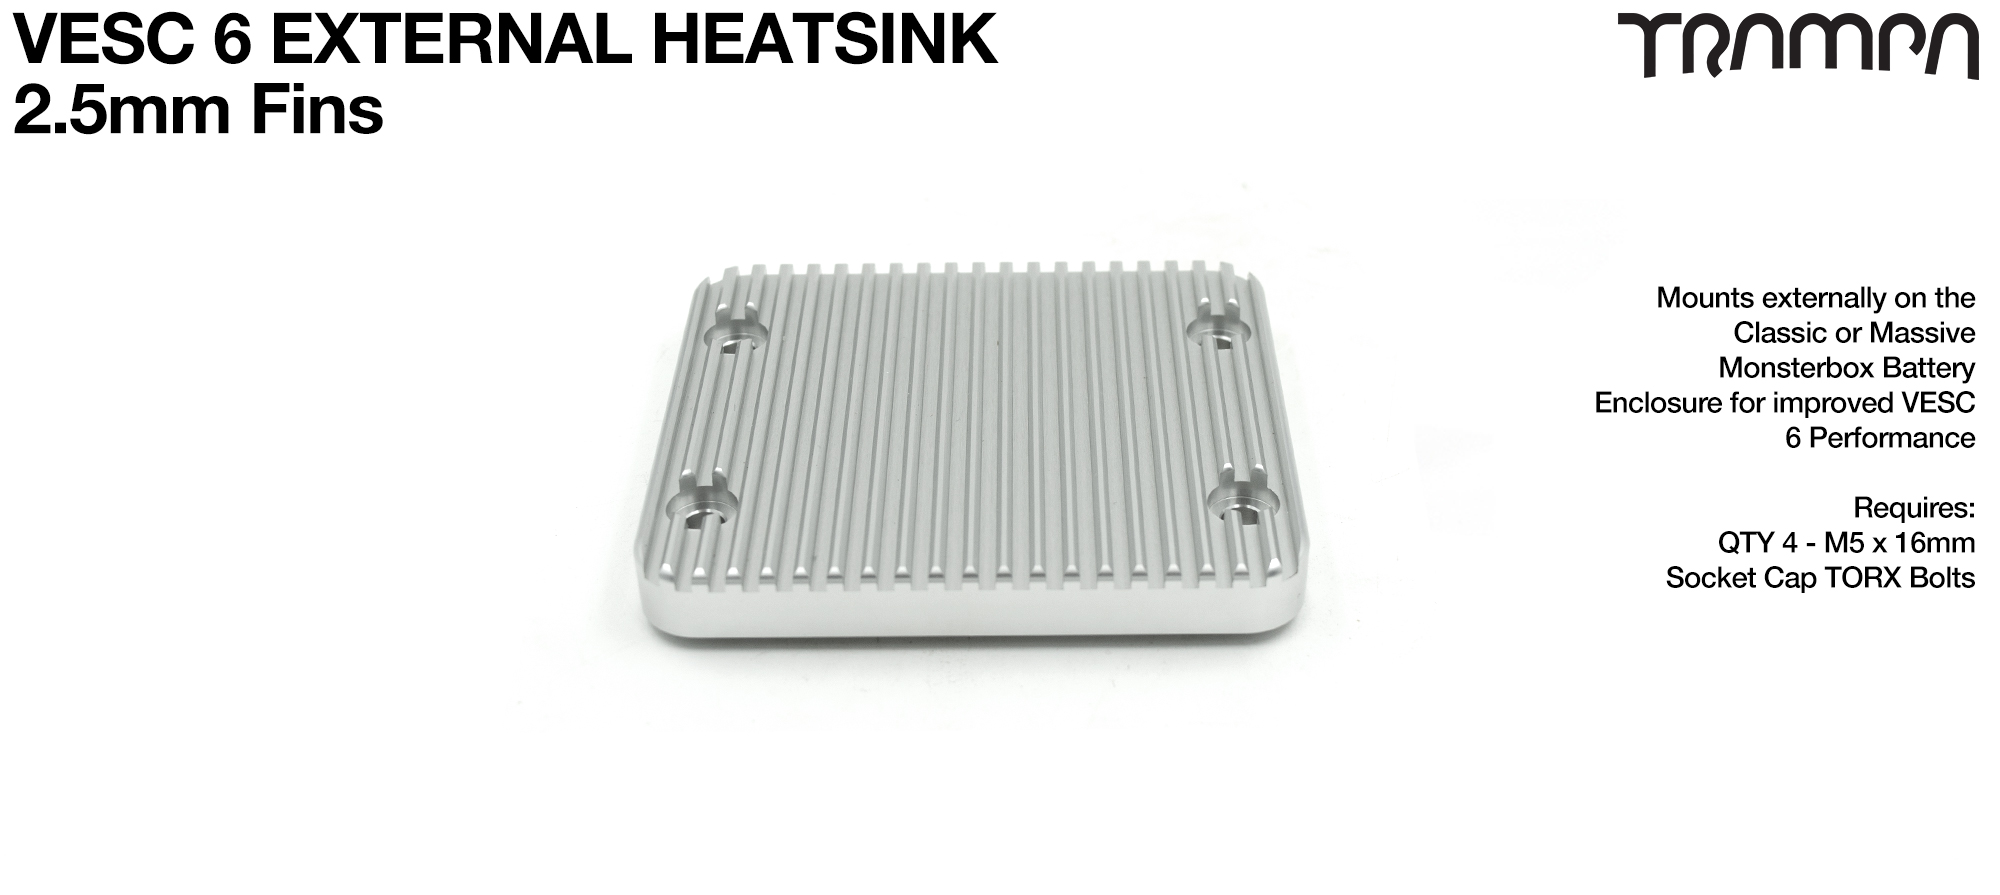 Add a 2.5mm fin VESC 6 Heat sink (+£45)